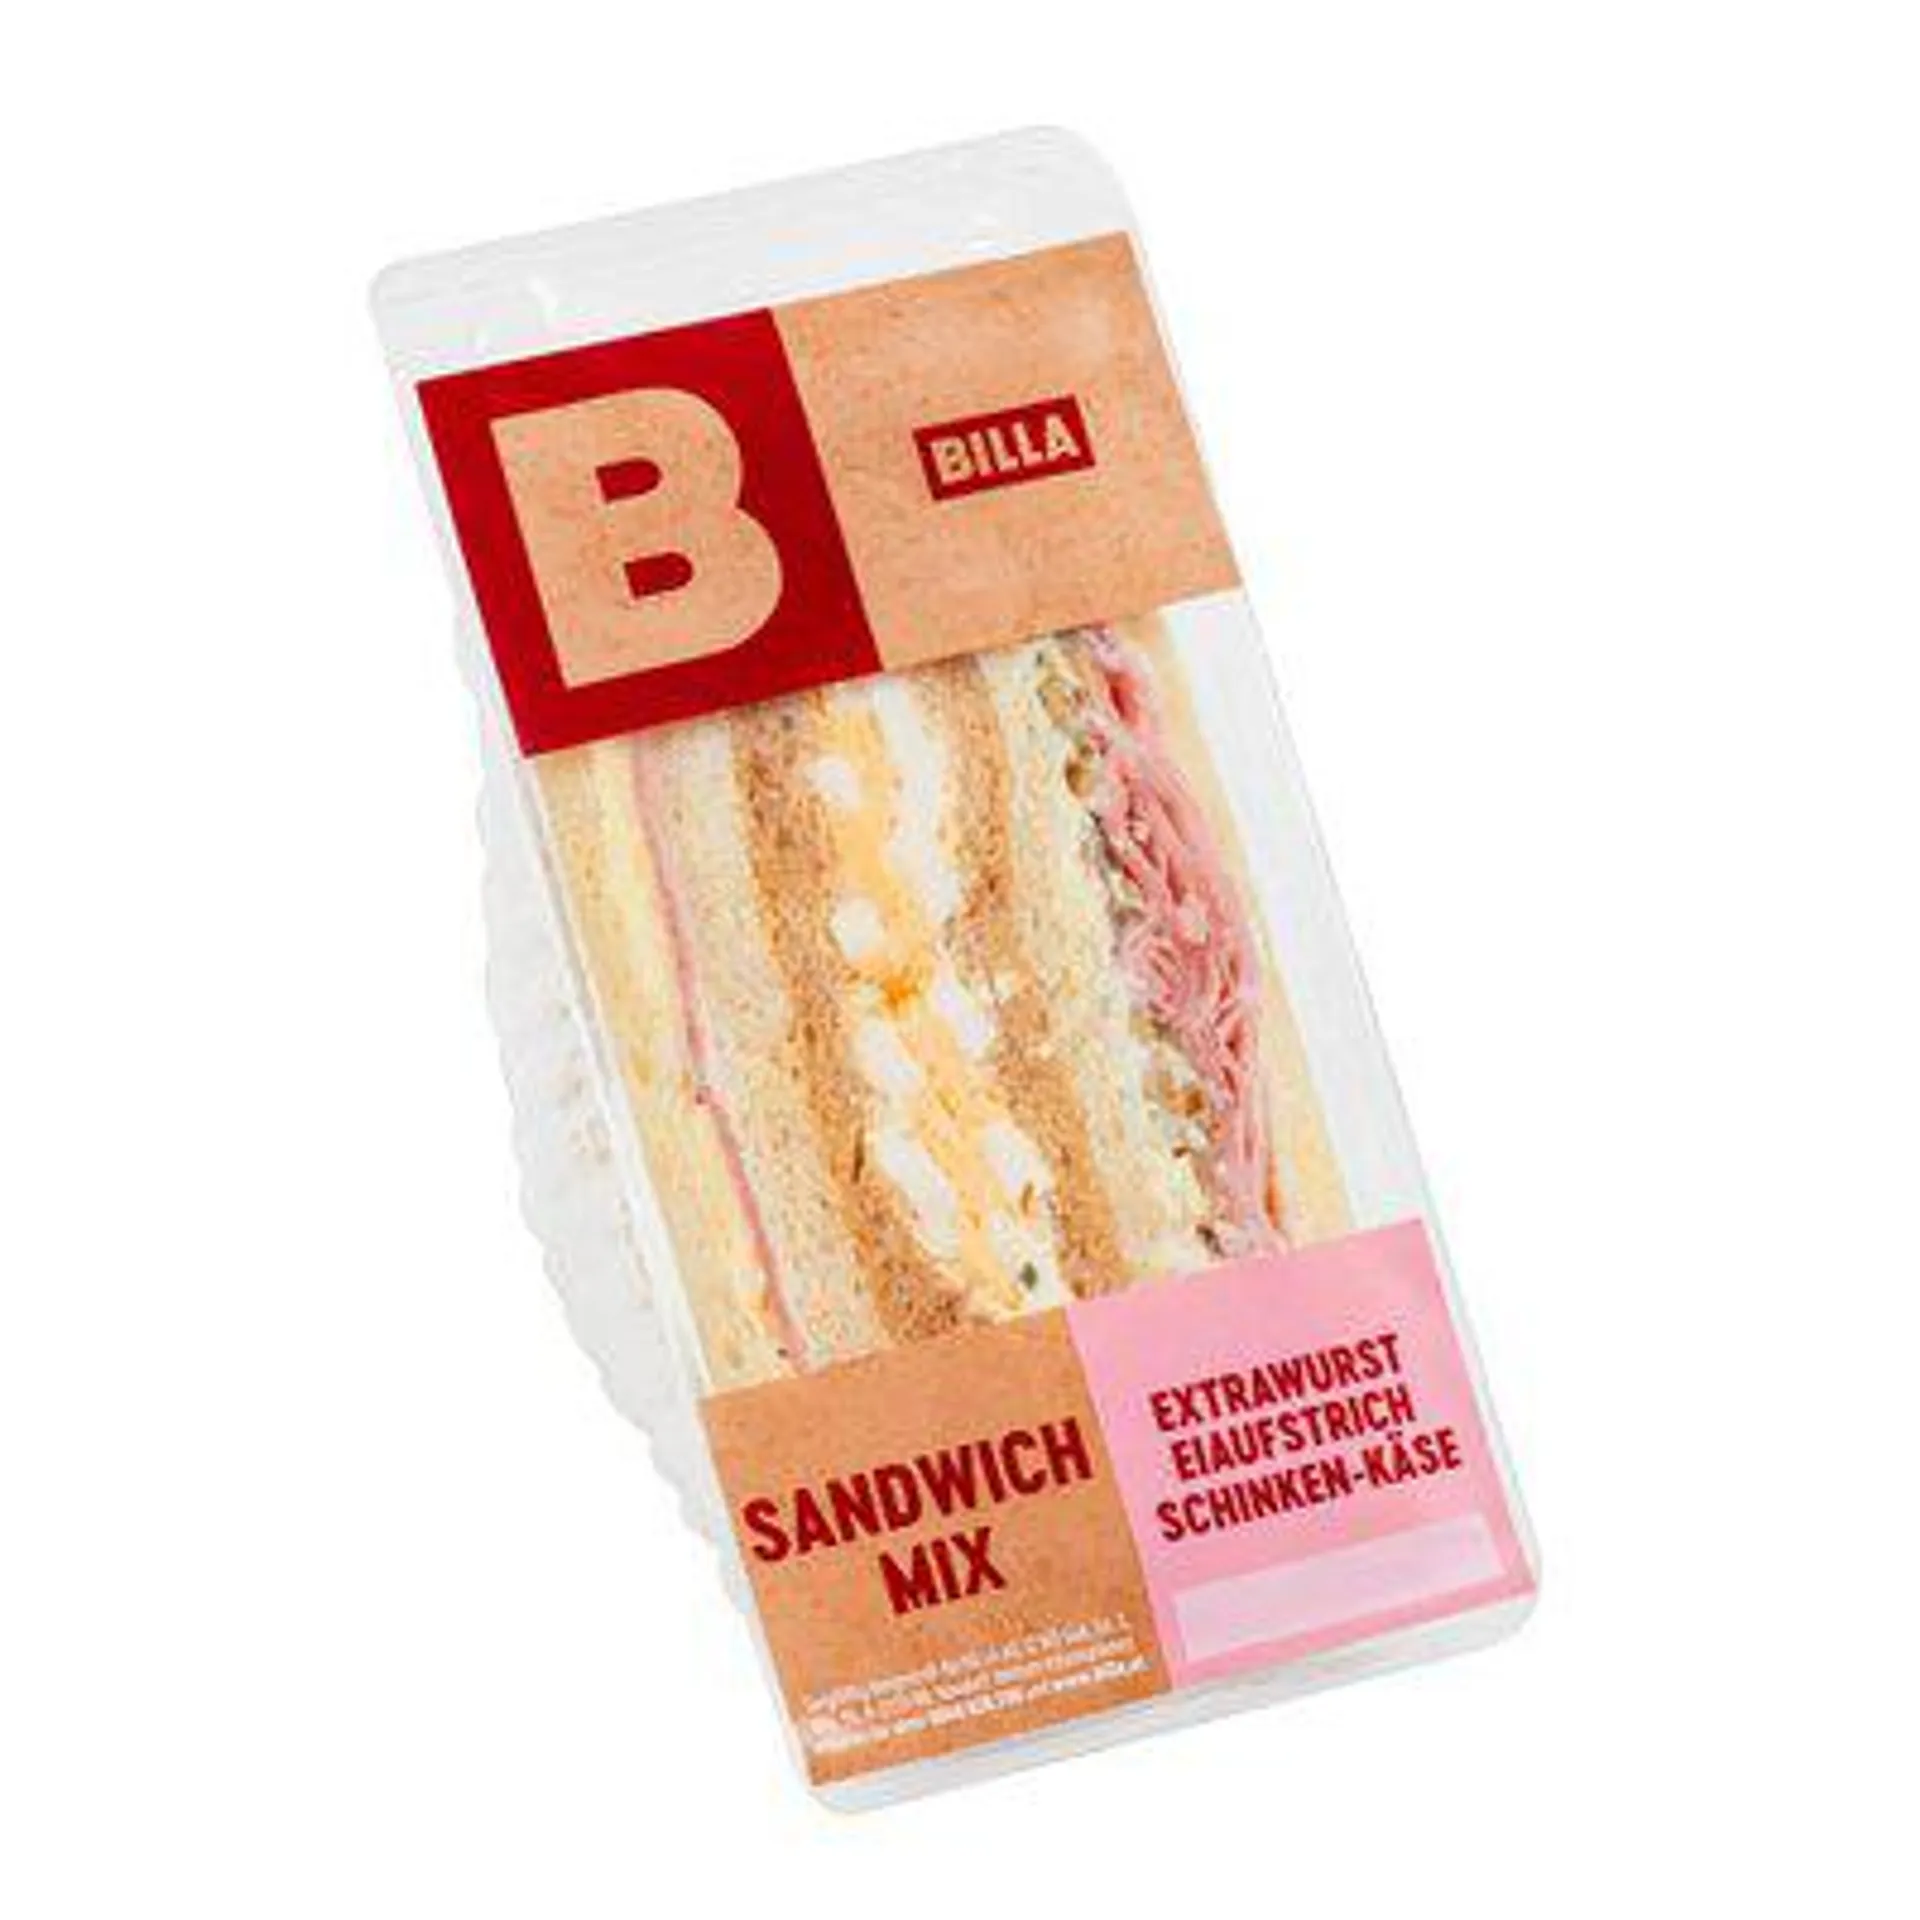 BILLA Extrawurst, Eiaufstrich, Schinken-Käse Sandwich Mix